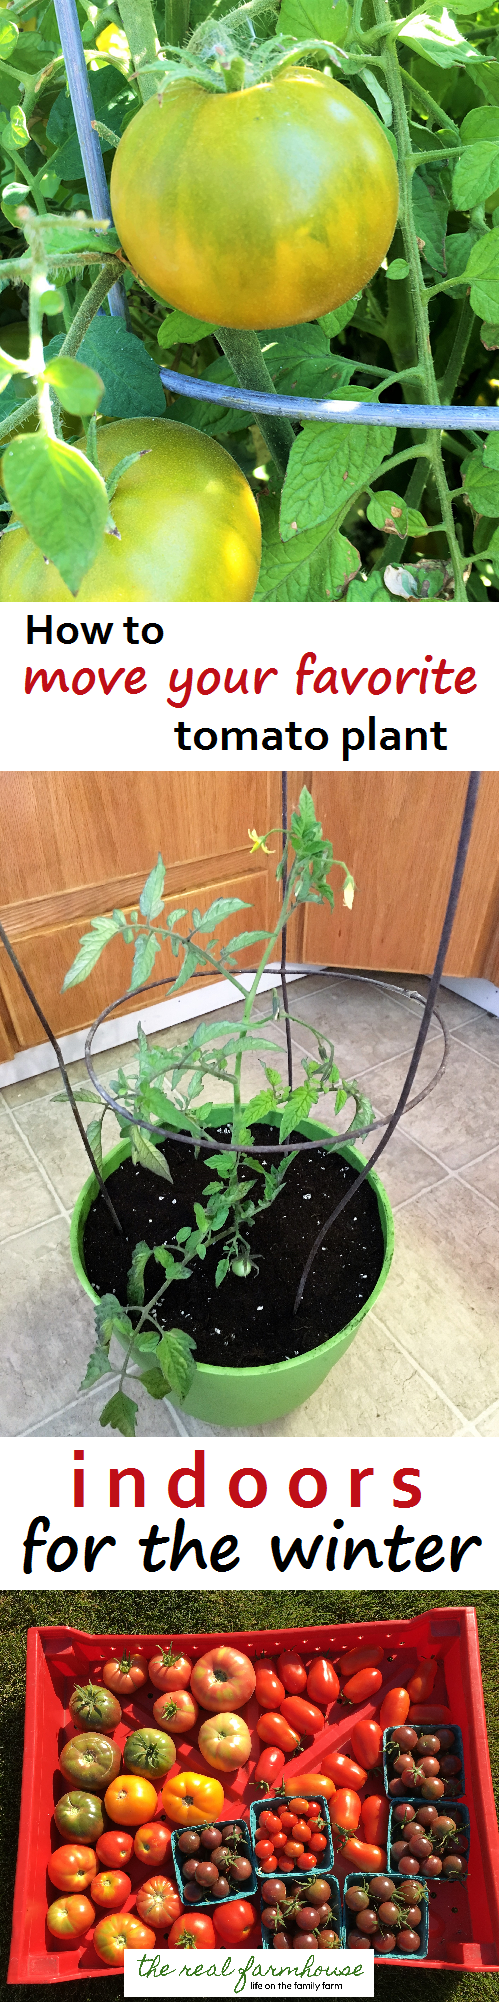 čerstvá rajčata i přes zimu! Jak bezpečně přemístit oblíbenou rostlinu rajčete do interiéru